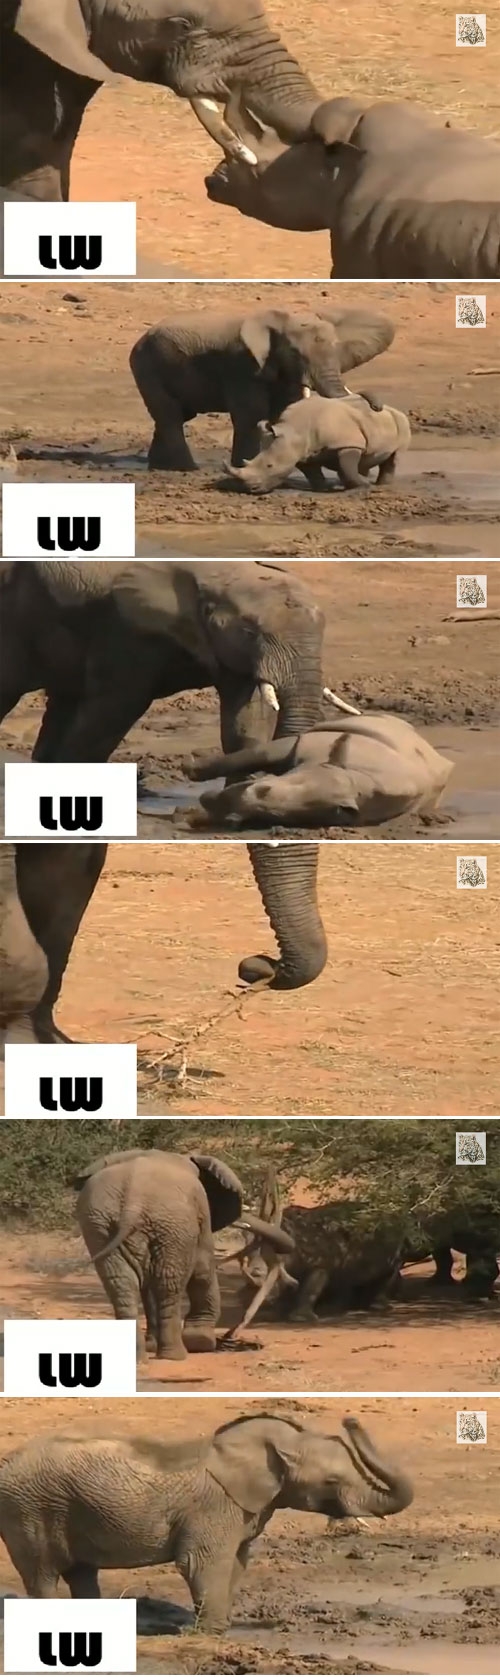 코뿔소 공격하는 코끼리